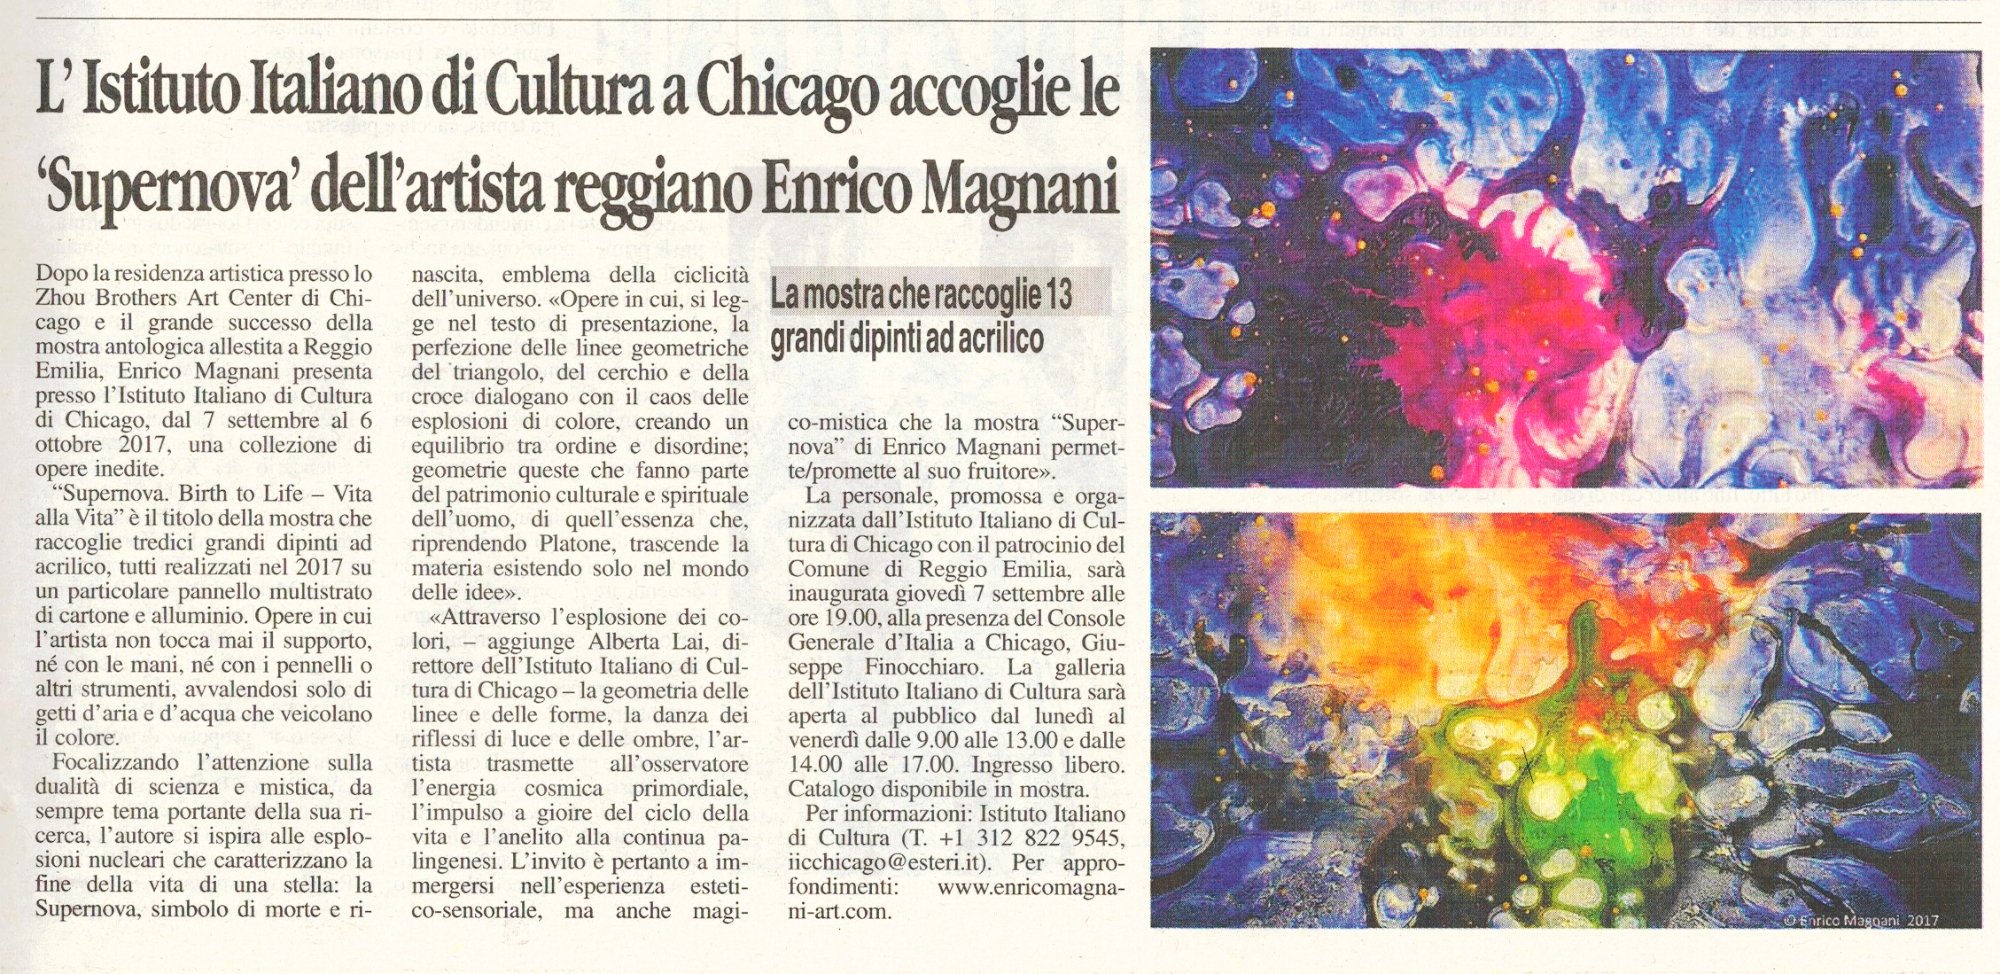 enrico magnani, chicago, istituto Italiano di Cultura, IIC, Supernova